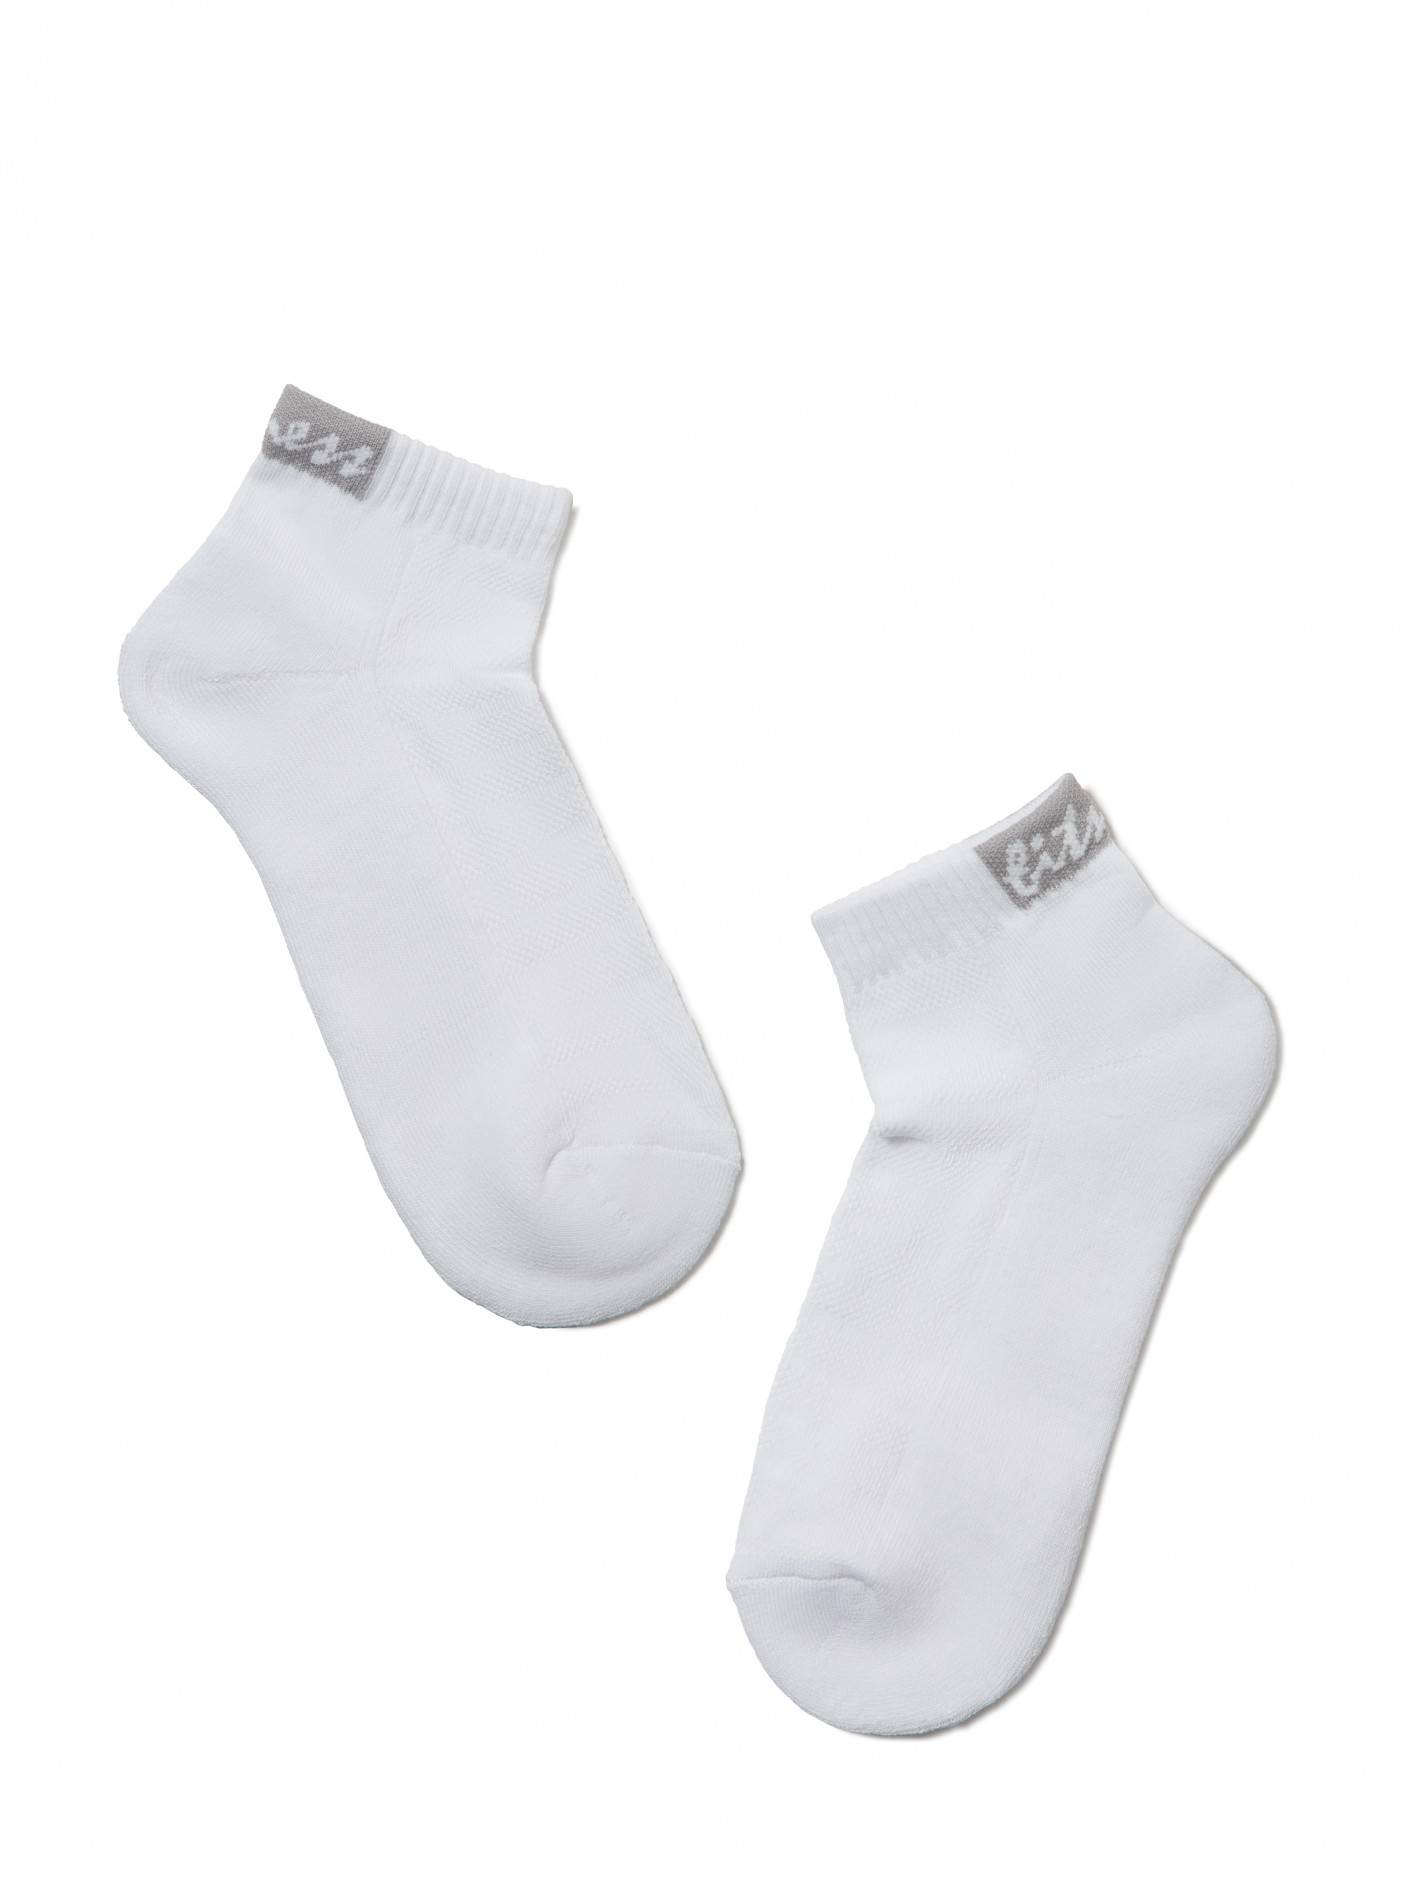 Как выбрать мужские носки? «правильные» носки — важная часть мужского гардероба